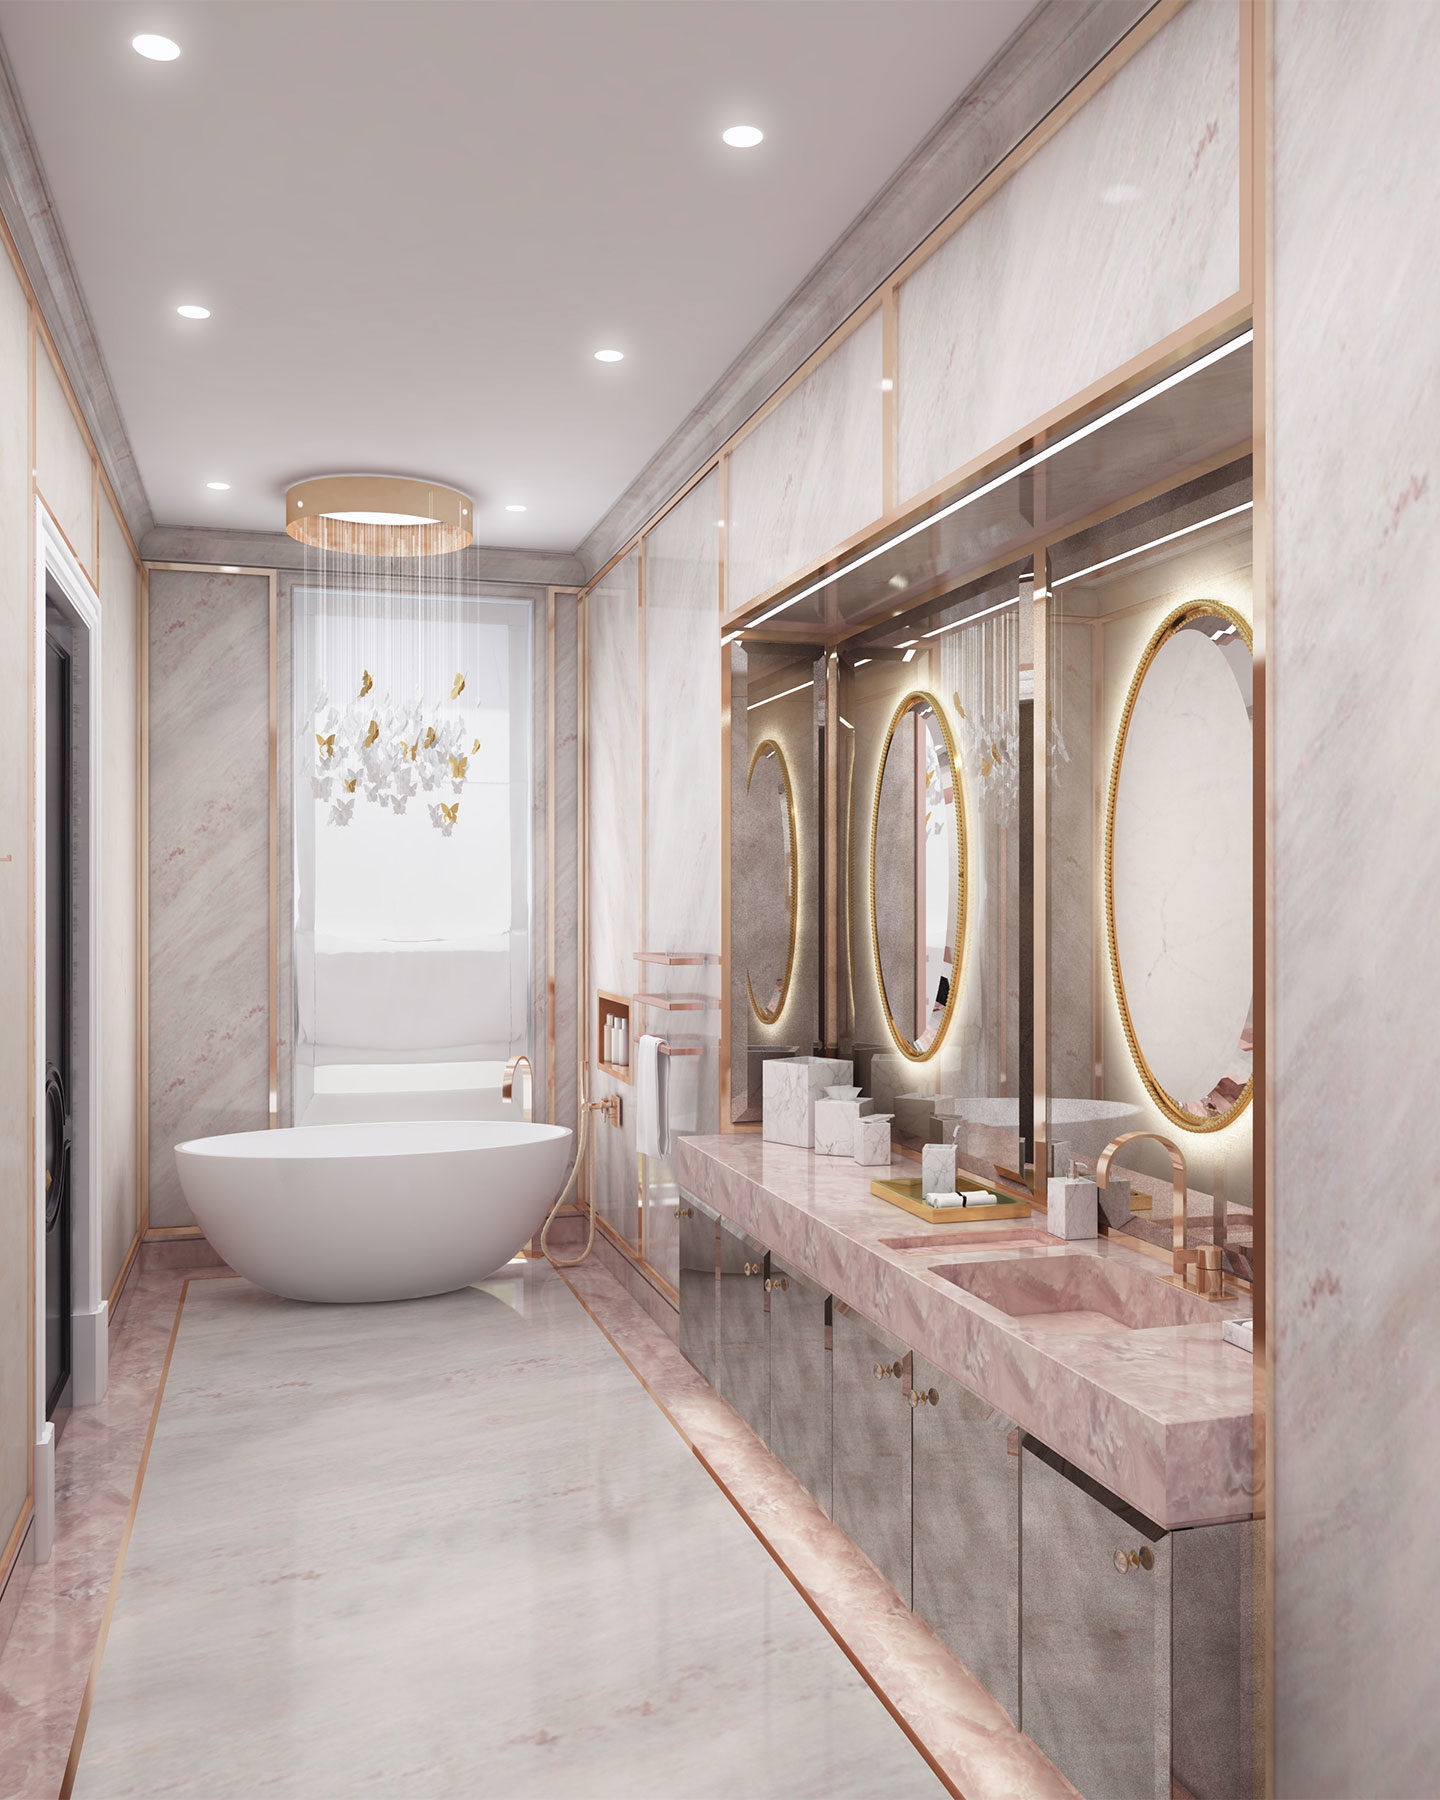 Phòng tắm bằng đá cẩm thạch bọc vàng tạo sự mới mẻ so với tường gạch truyền thống